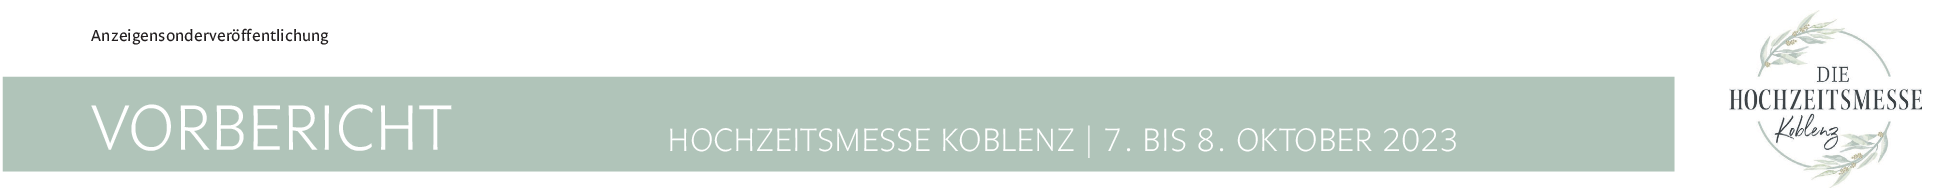 Hochzeitsmesse Koblenz: Traumhafte Hochzeiten im Fokus